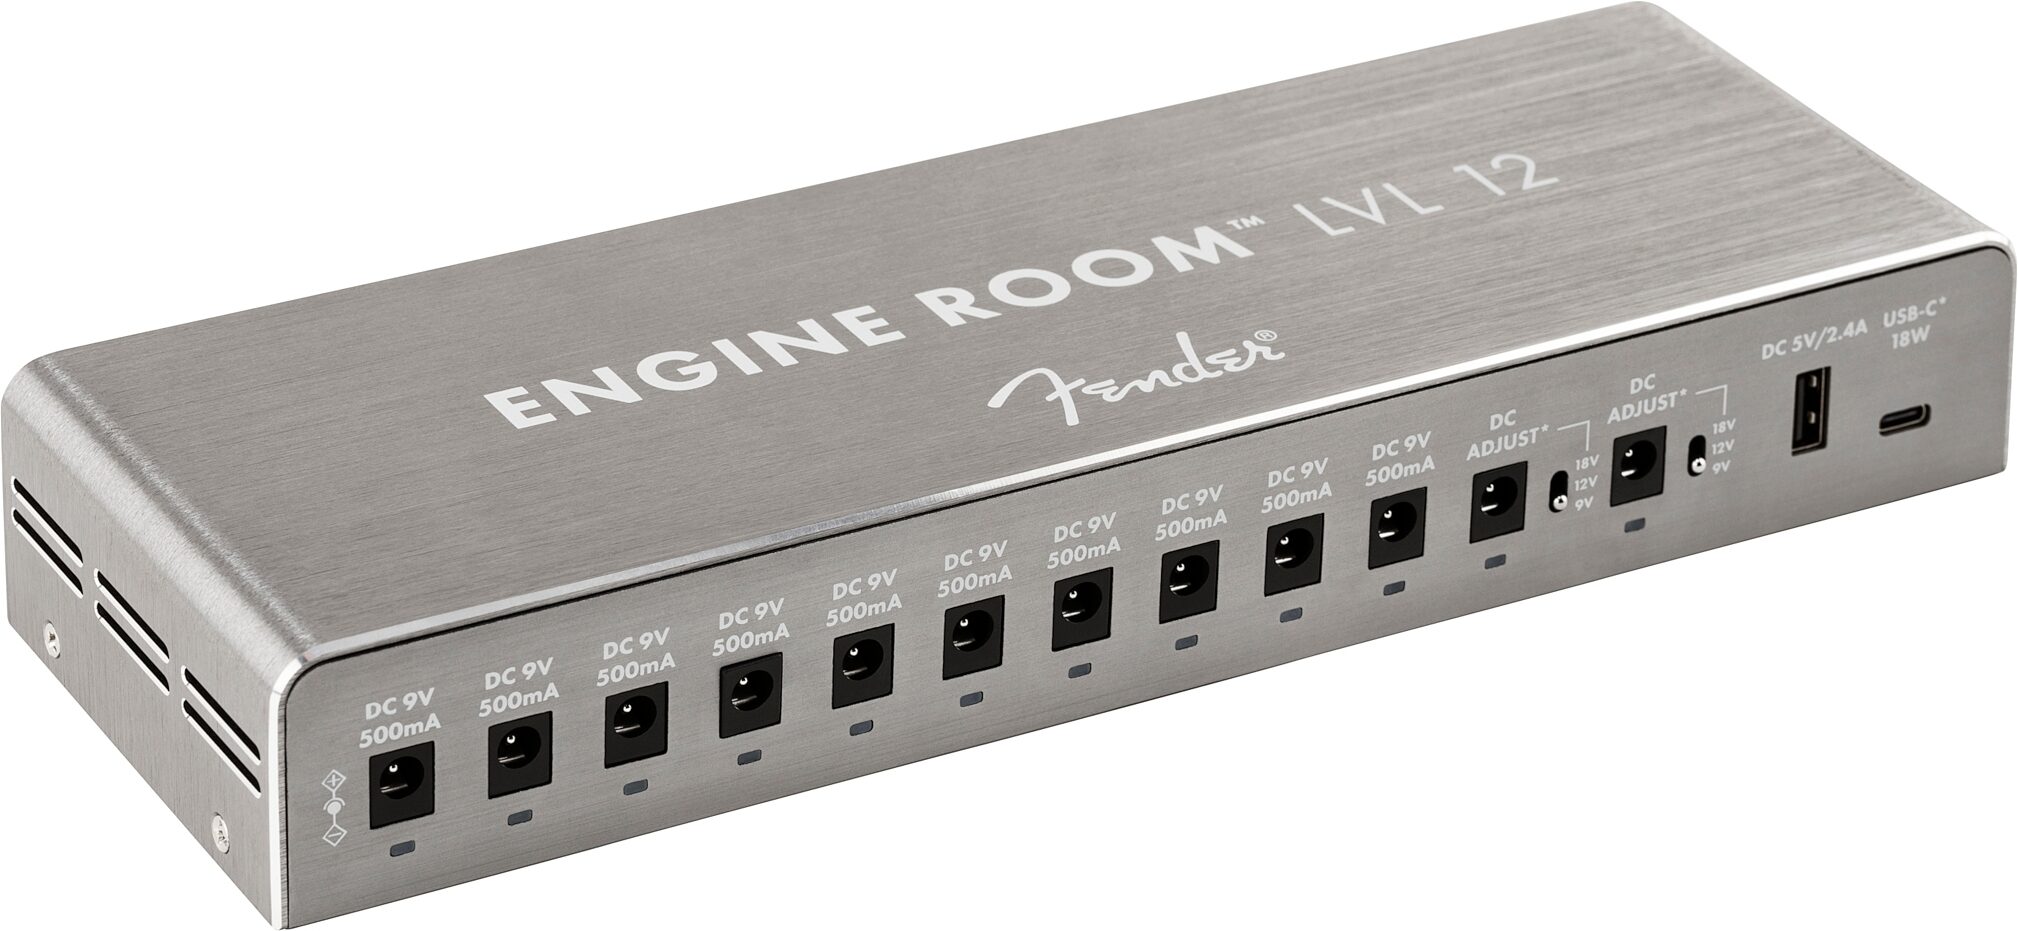 Fender Engine Room™ LVL8 Power Supply 120V